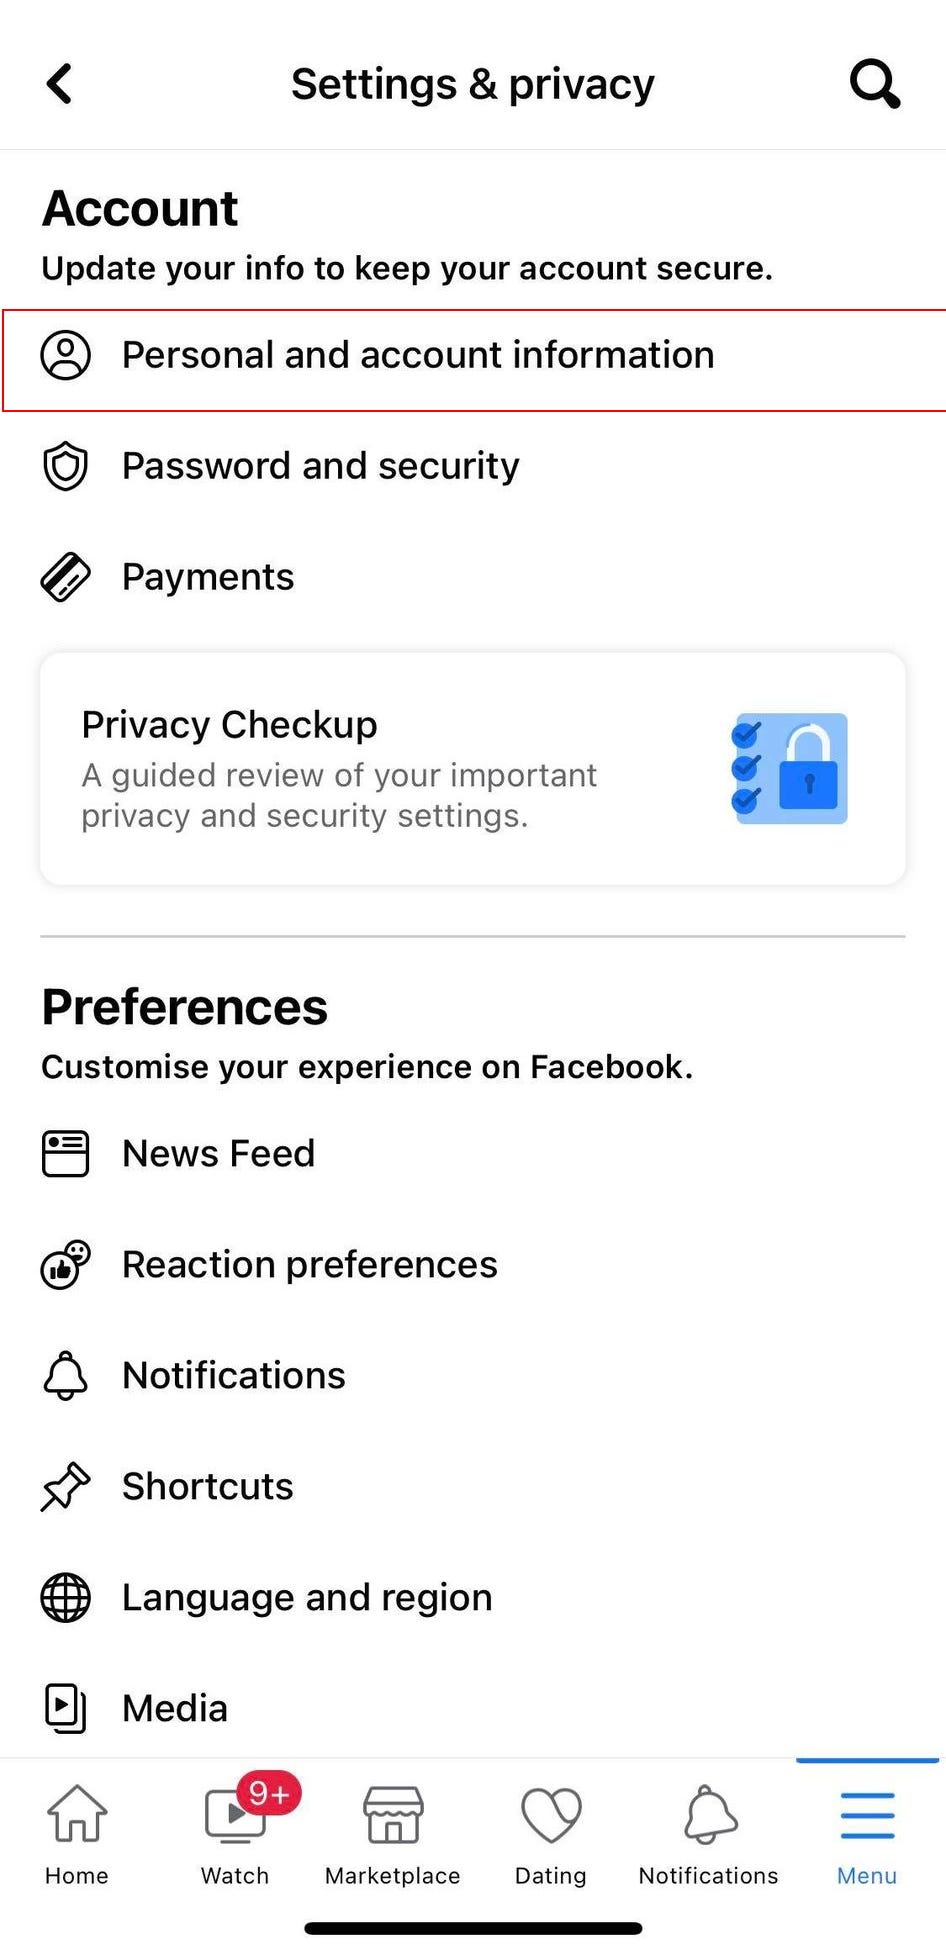 Pagina Impostazioni e privacy su Facebook, con l'opzione "Informazioni personali e account" evidenziata.